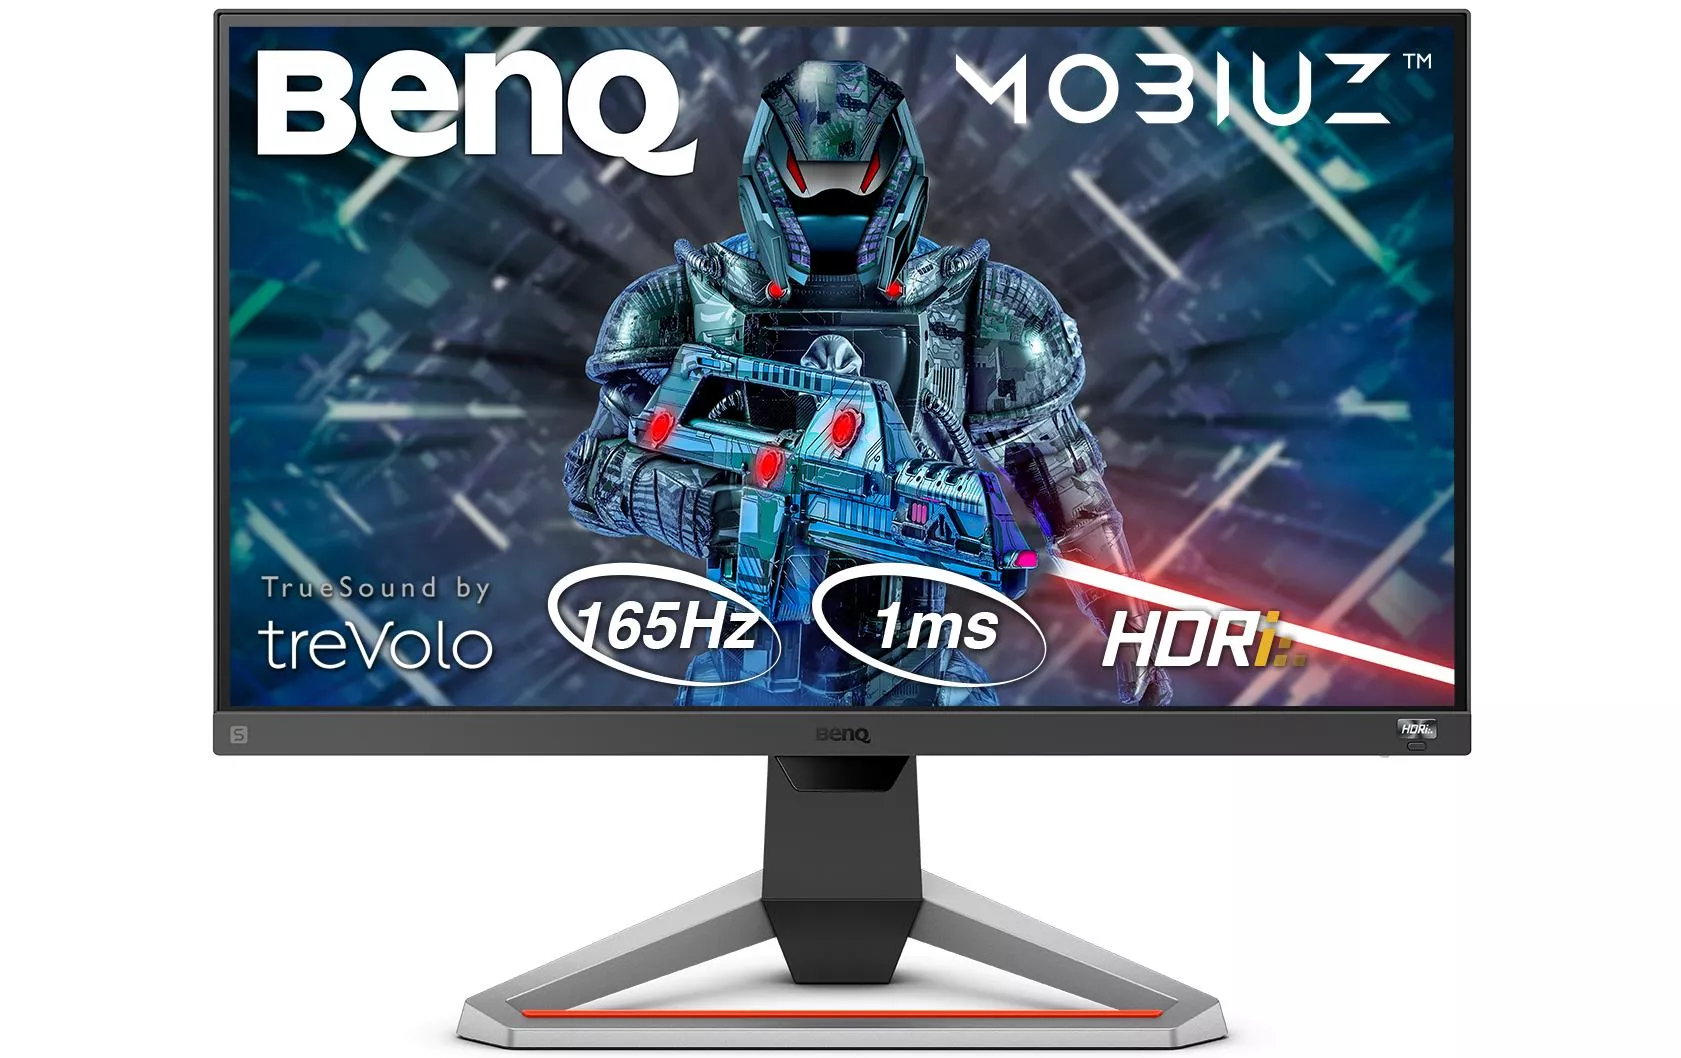 Monitor BenQ EX2710S